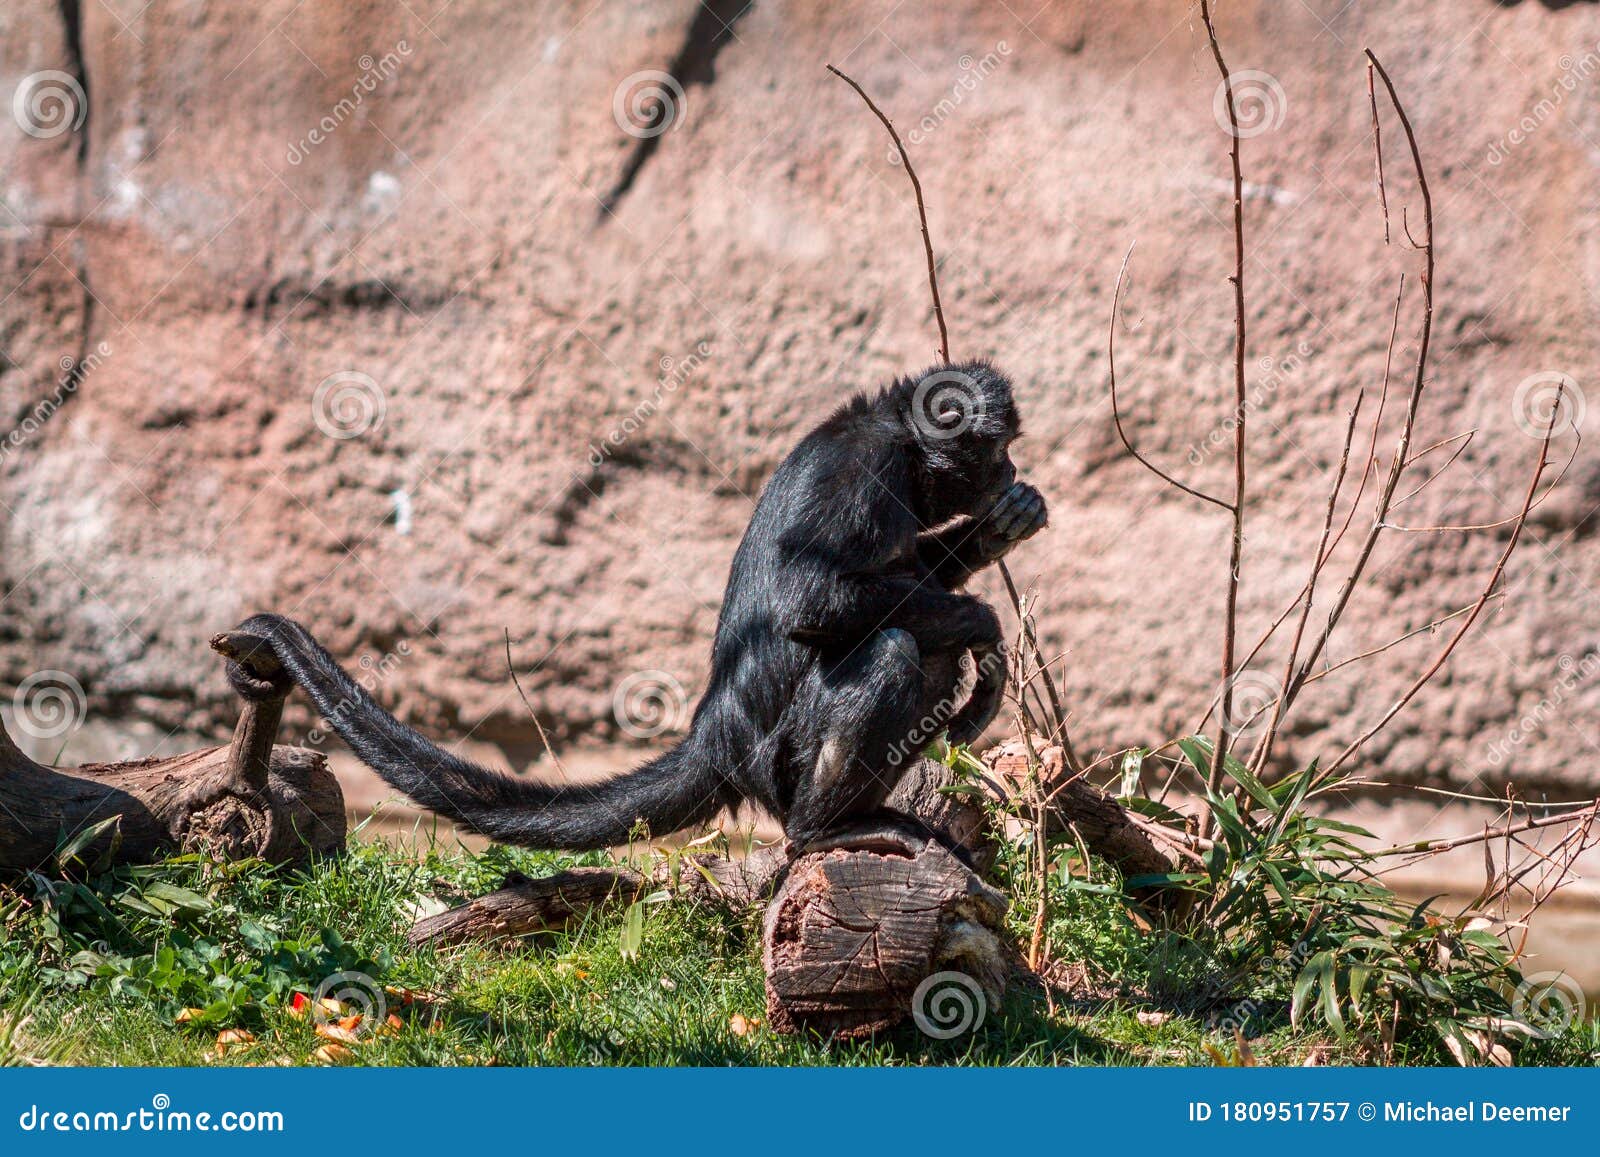 Fotos de Macaco aranha, Imagens de Macaco aranha sem royalties